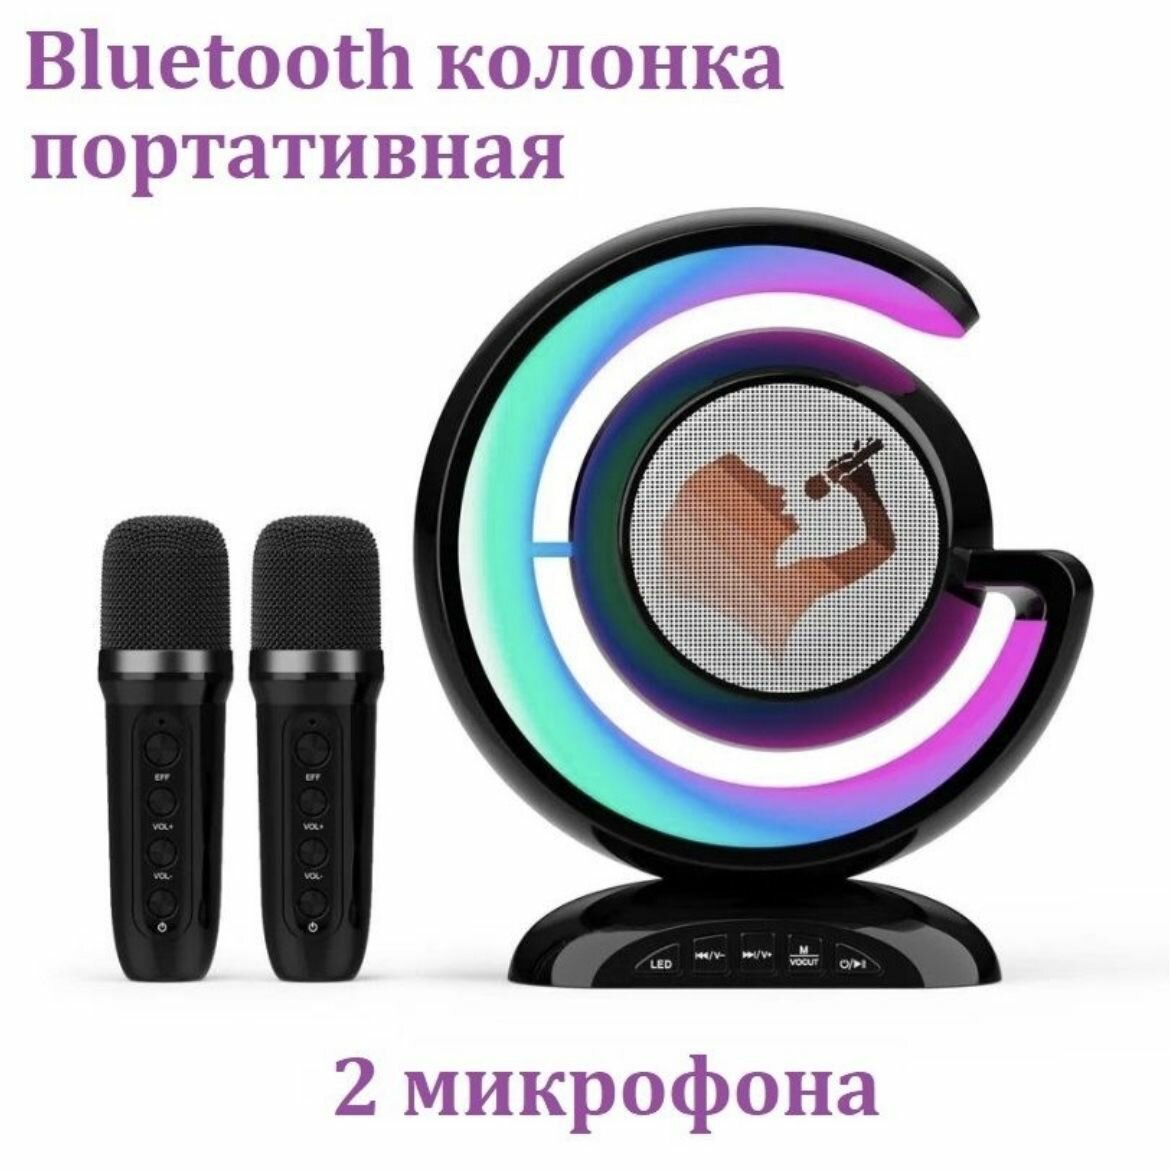 Беспроводная караоке-колонка с Bluetooth-подключением, двумя микрофонами и светодиодной подсветкой. черная.